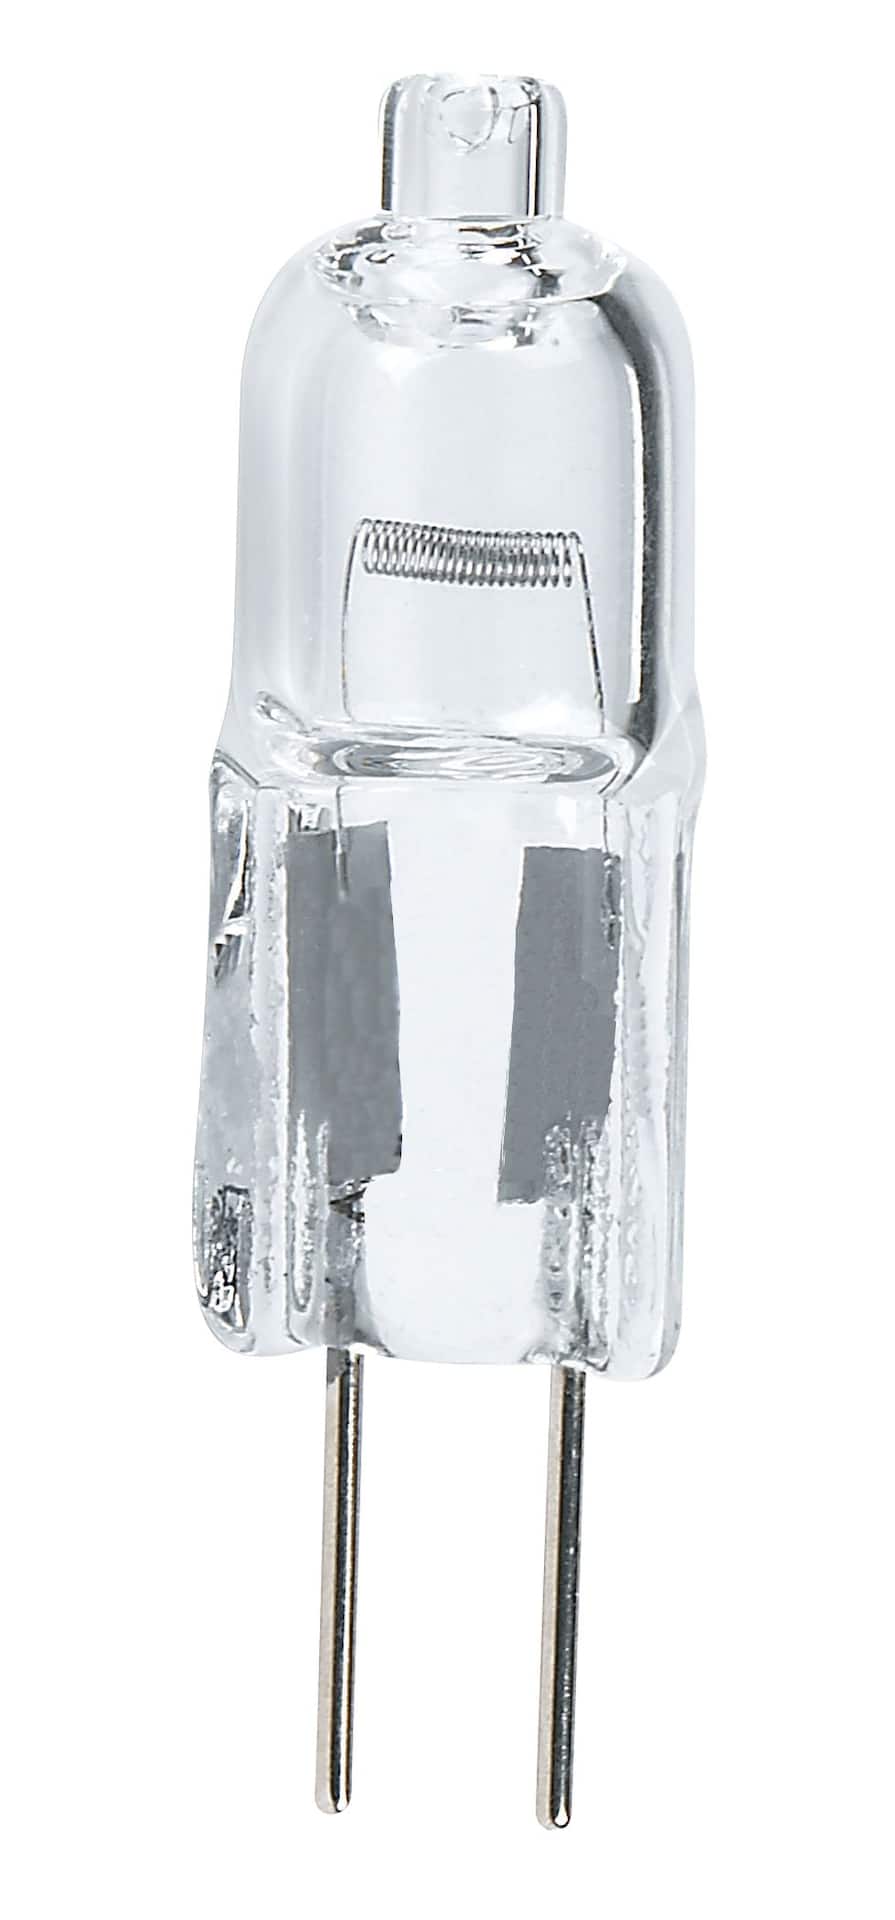 LITTLITE LA-18PA-HI LAMPE COL DE CYGNE POUR PUPITRE 18, ampoule halogène,  variateur, fixe, sans alim